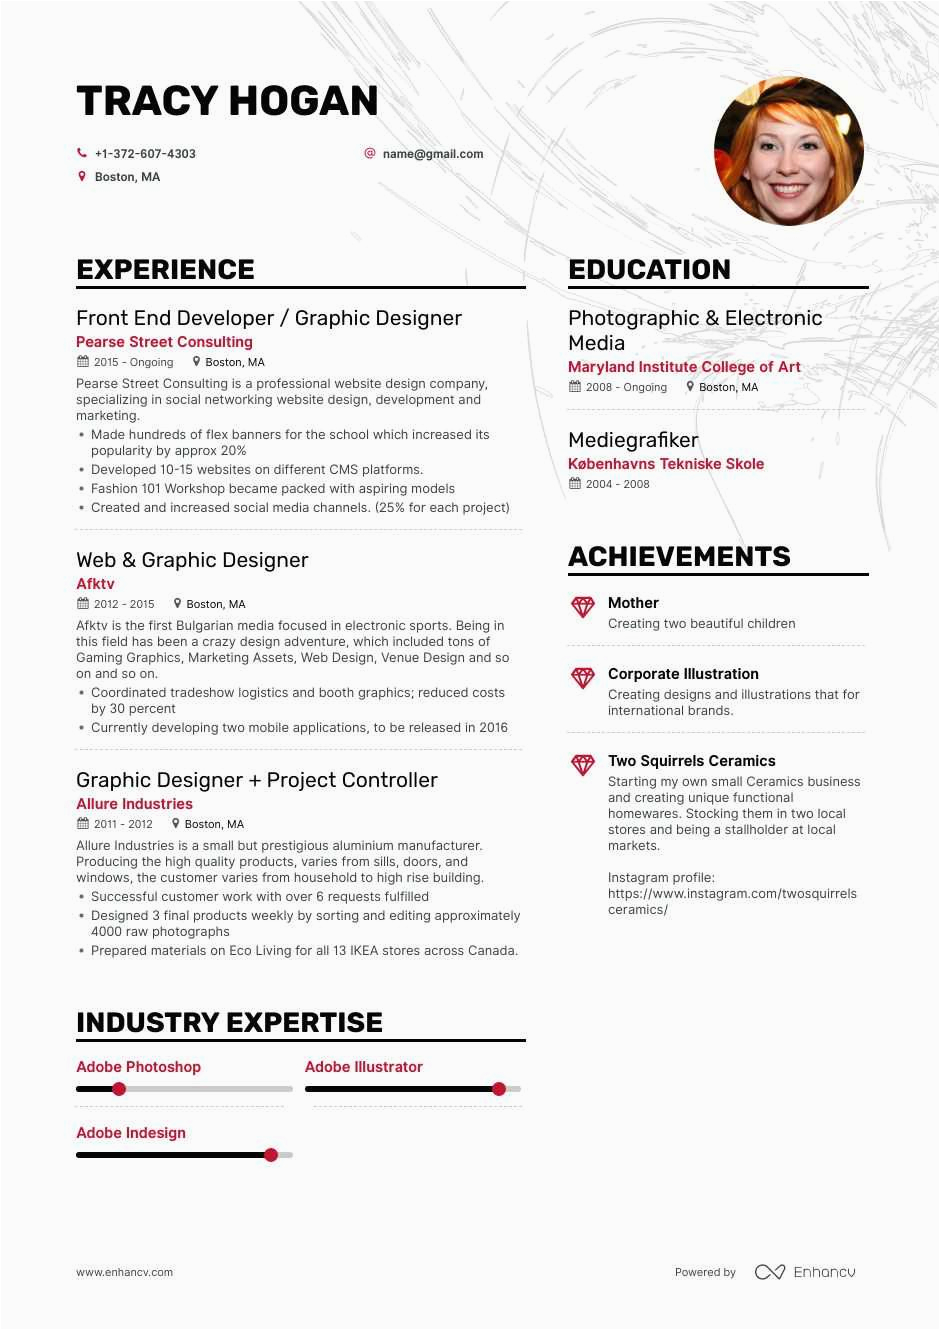 Sample Resume for Freelance Graphic Designer 8 Freelance Graphic Designer Resume Samples and Writing Guide